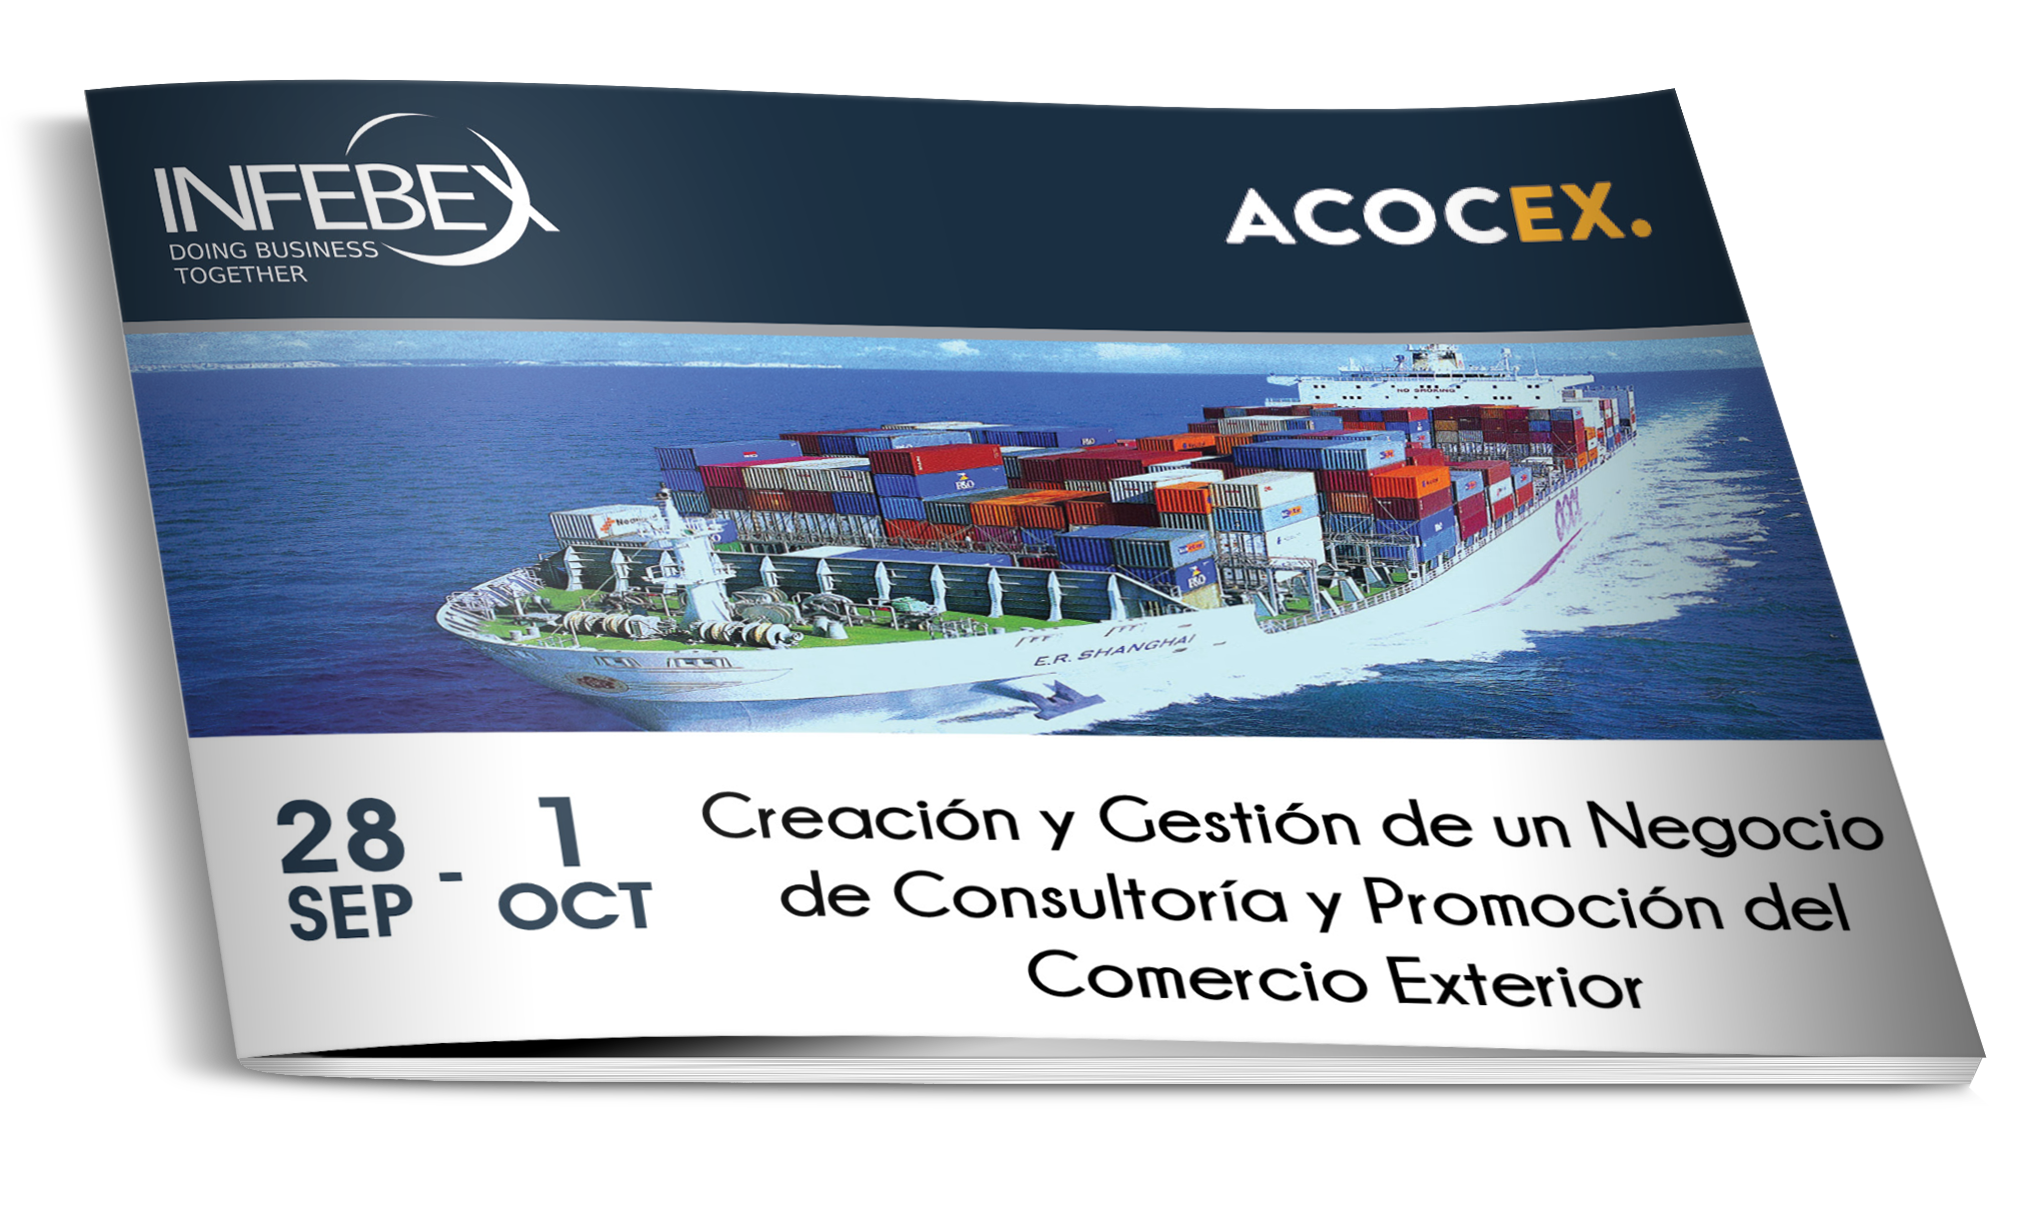 Creación y Gestión de un Negocio de Consultoría y Promoción del Comercio Exterior - Infebex - Acocex